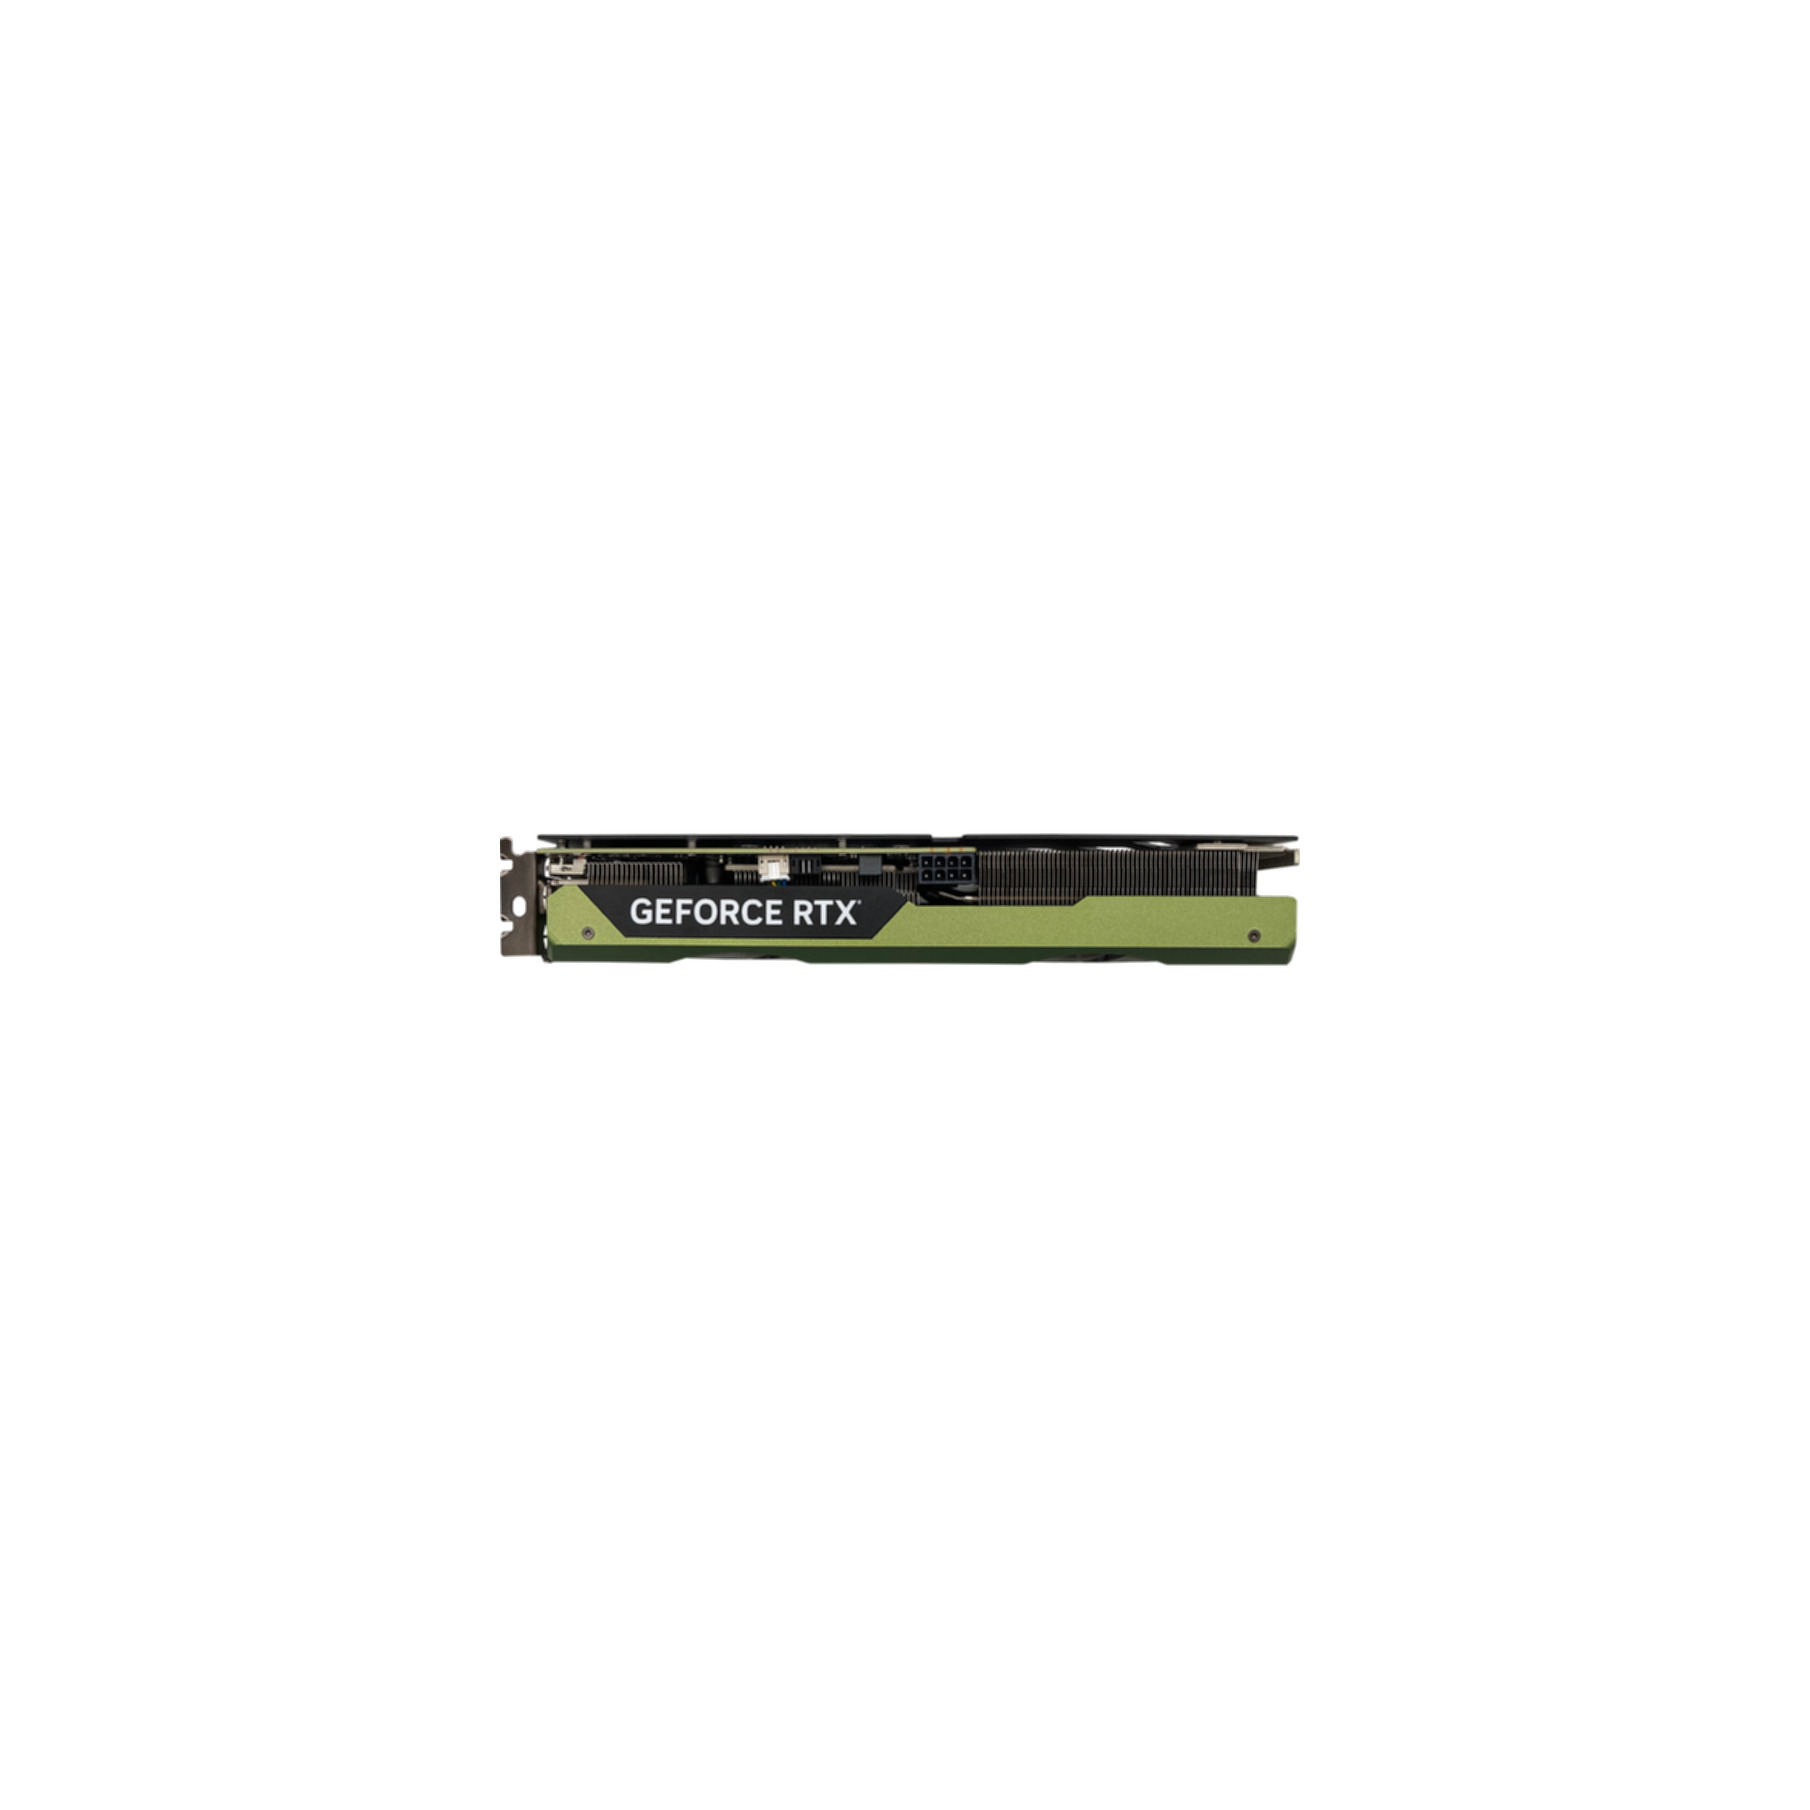 MANLI Manli 4060 Grafikkarten (NVIDIA, NVidia Ti GeForce Grafikkarte) RTX 8GB PCI-Express